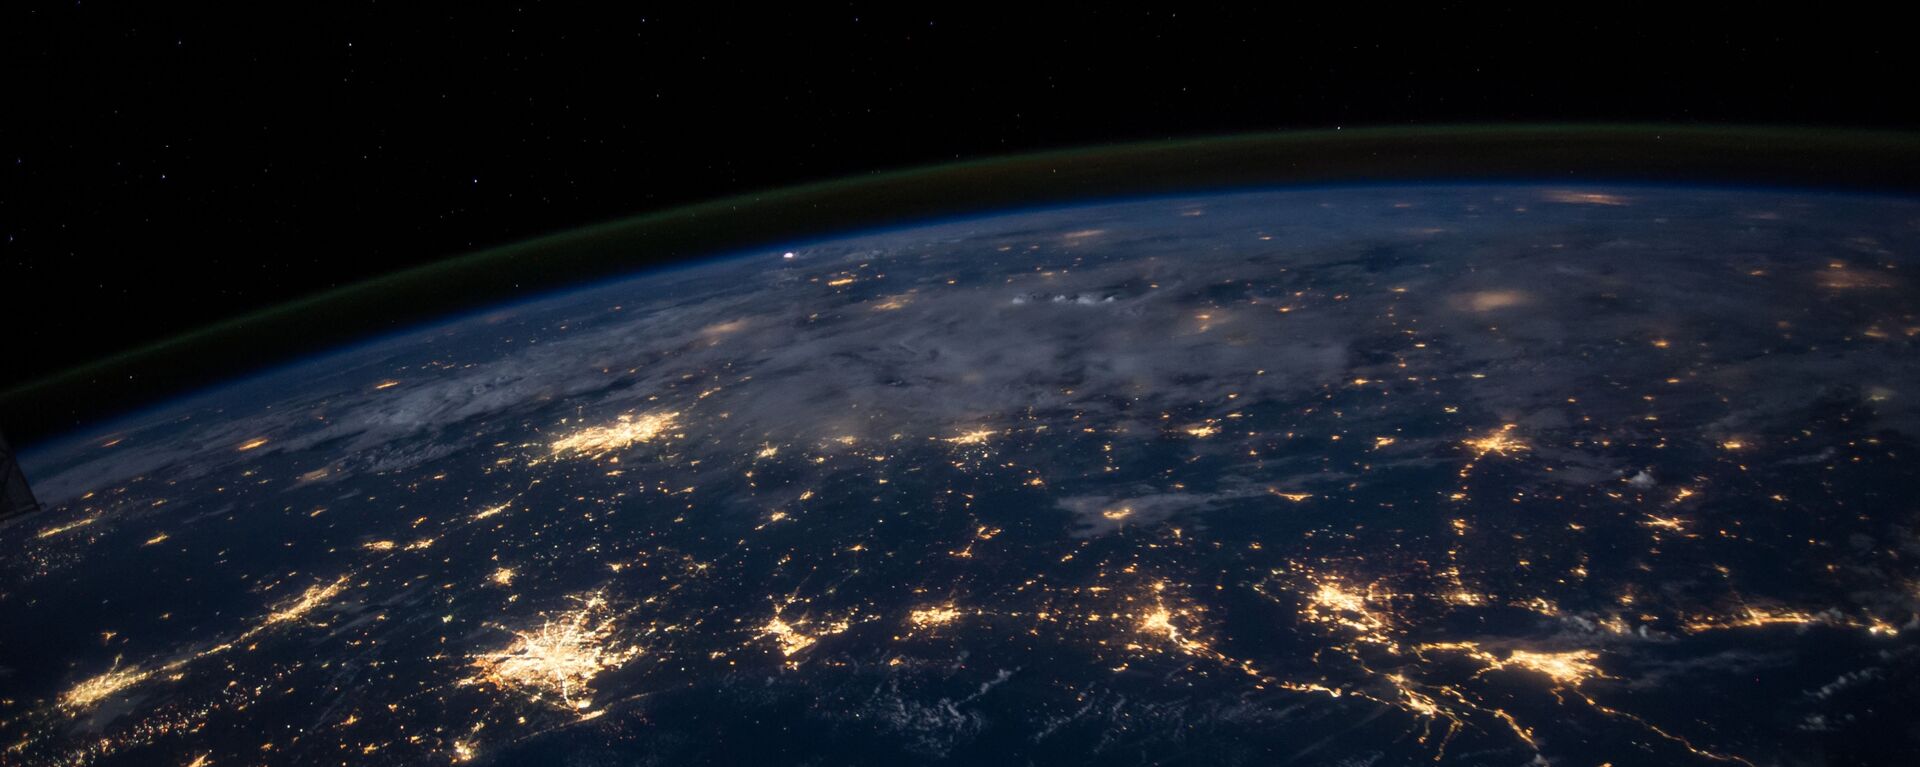 La Tierra vista desde el espacio (imagen referencial) - Sputnik Mundo, 1920, 17.11.2020